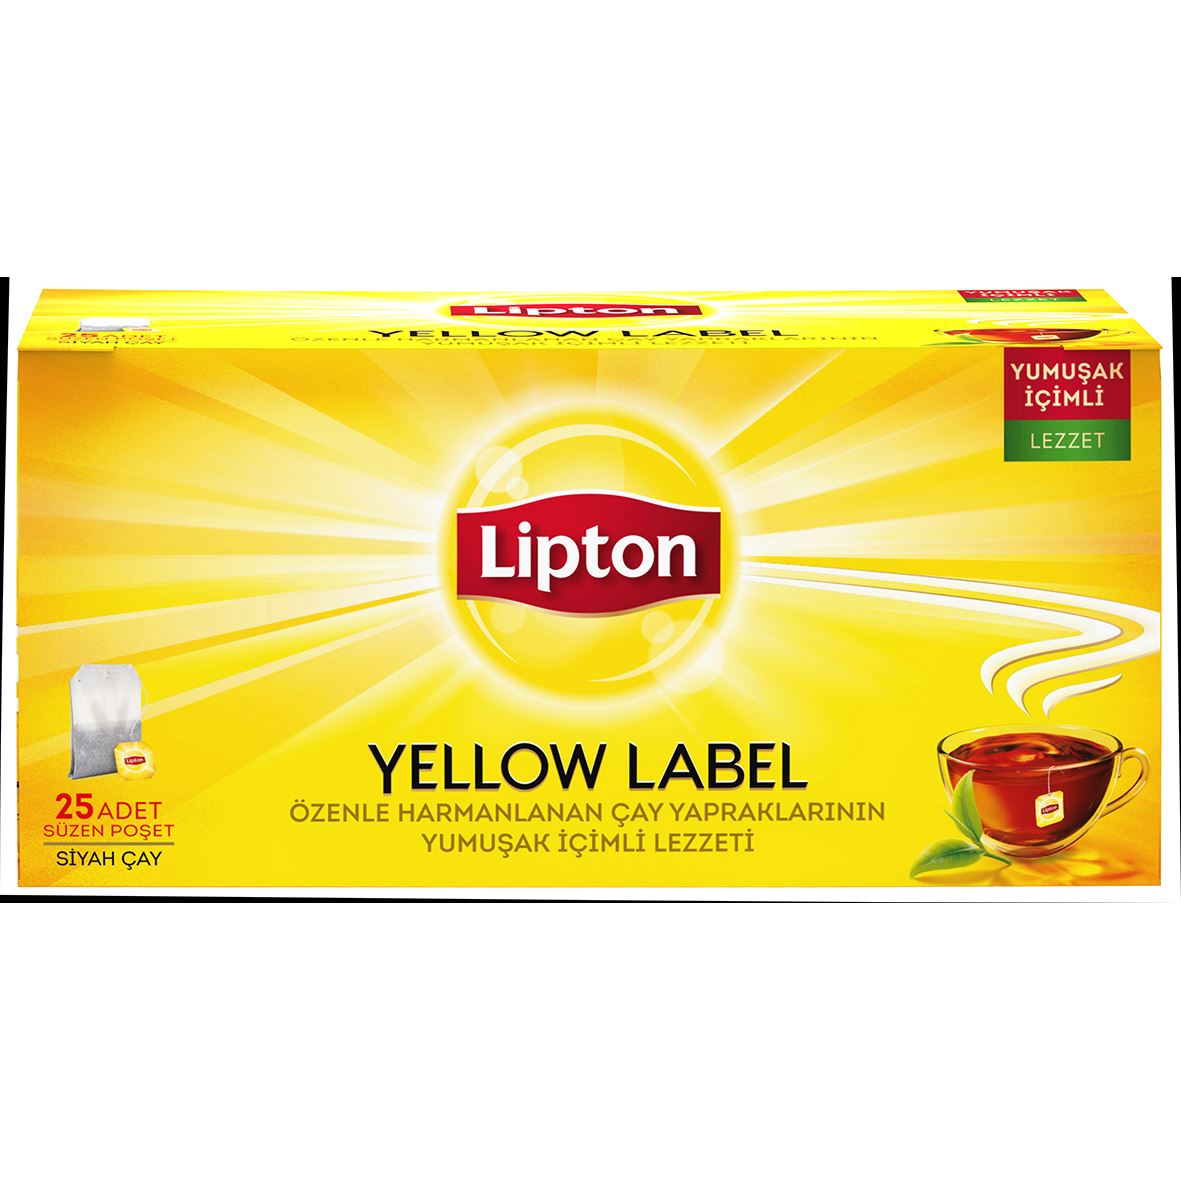 Lipton Yellow Label Bardak Poşet Çay 25'Lı 50 G